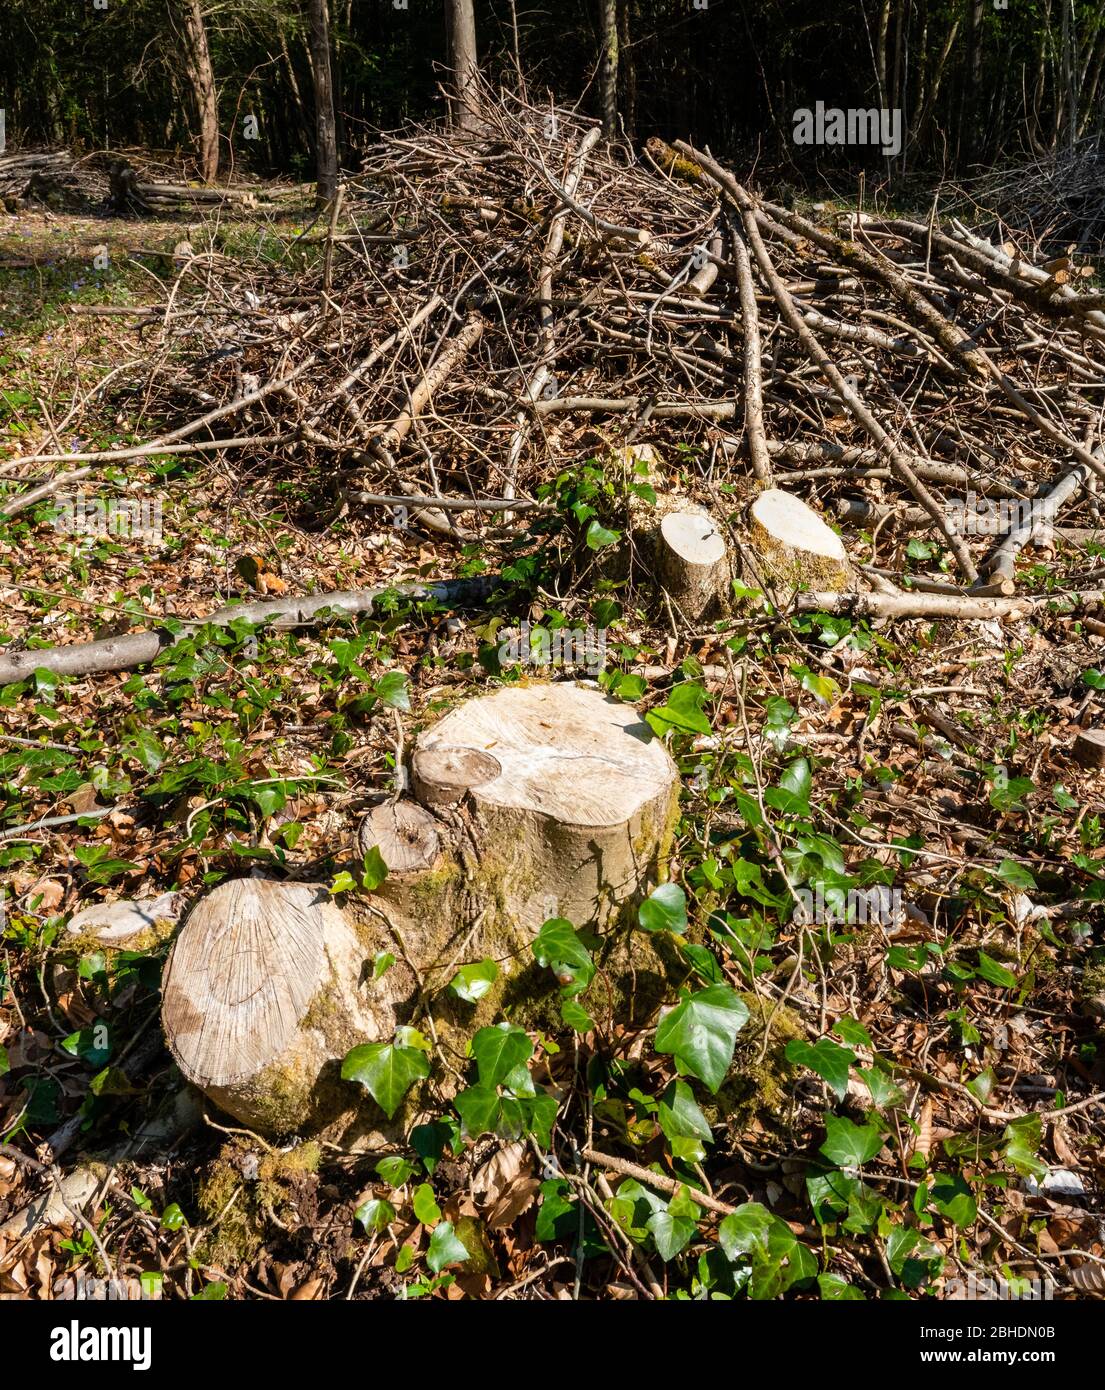 Tabourets de copice et pile de pruneaux dans un bois anglais - Somerset UK - le copiching améliore la biodiversité et fournit une source renouvelable de bois Banque D'Images